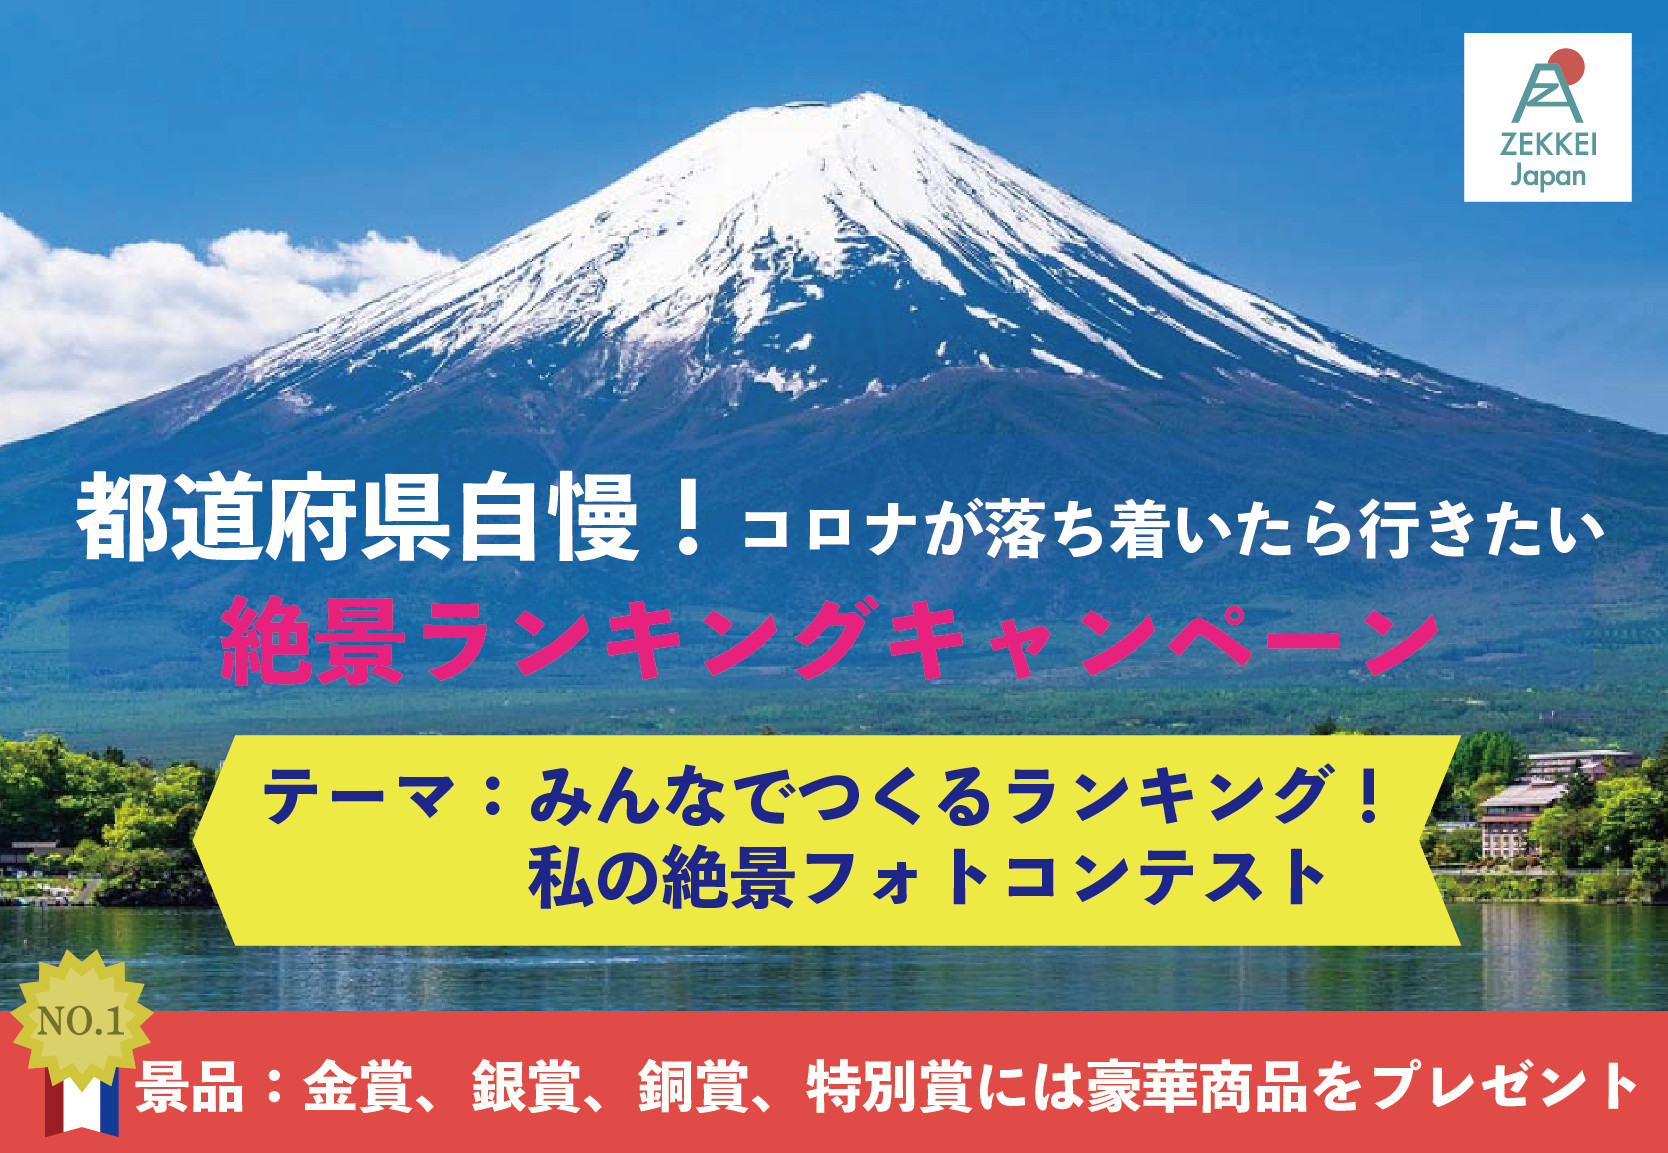 【第1回ZEKKEI Japanフォトコンテスト開催中】審査員、協賛、景品追加のお知らせ